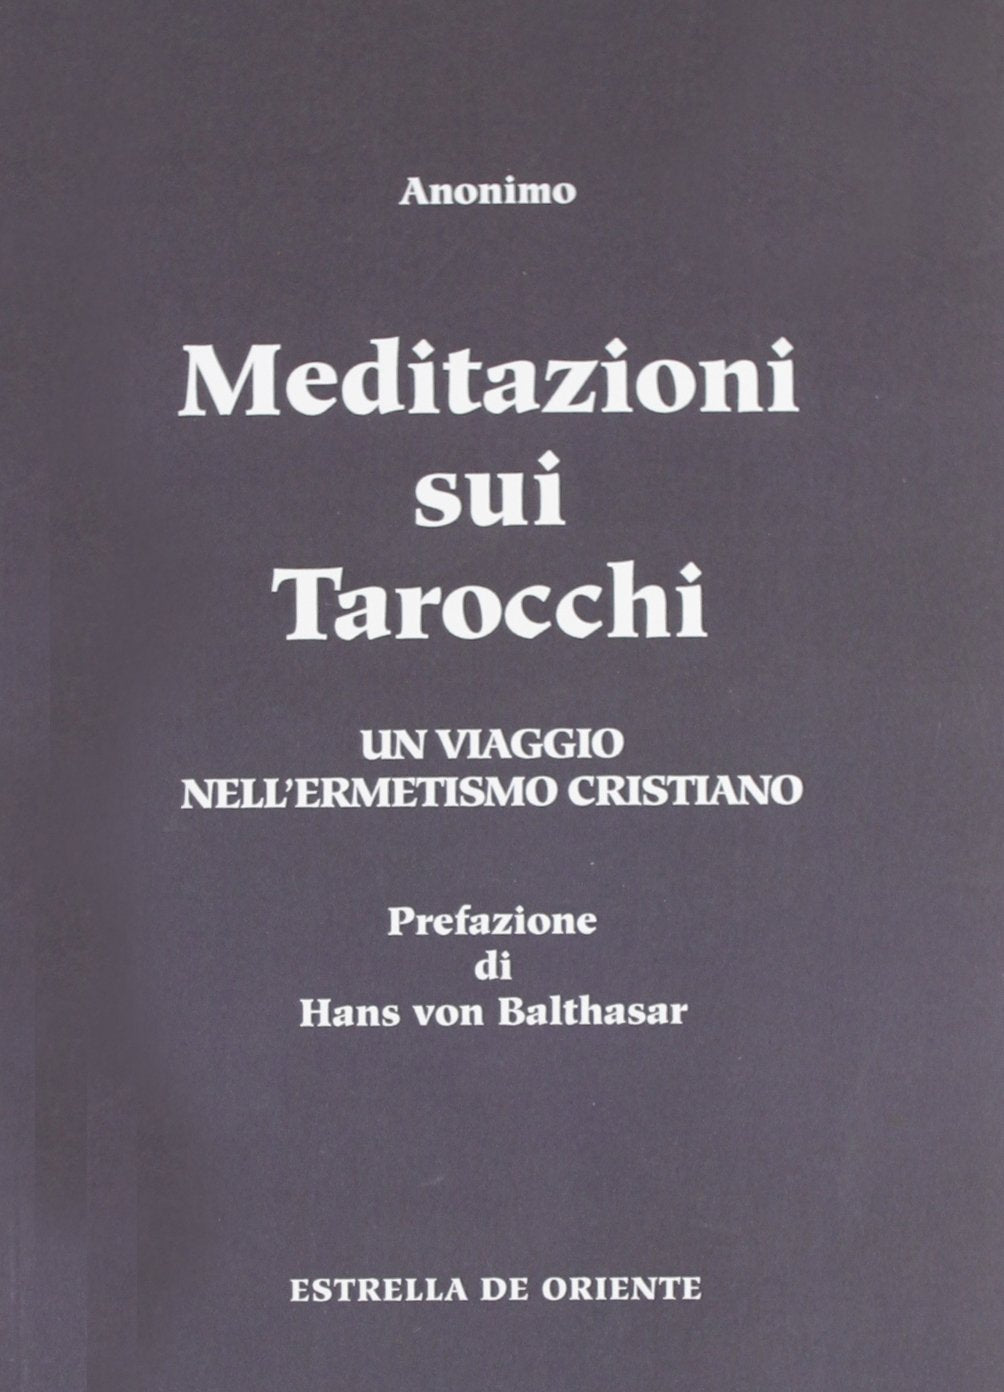 Meditazioni sui Tarocchi. Un viaggio nell'ermetismo cristiano - Volume 1° - Anonimo (Prefazione di Hans von Balthasar)